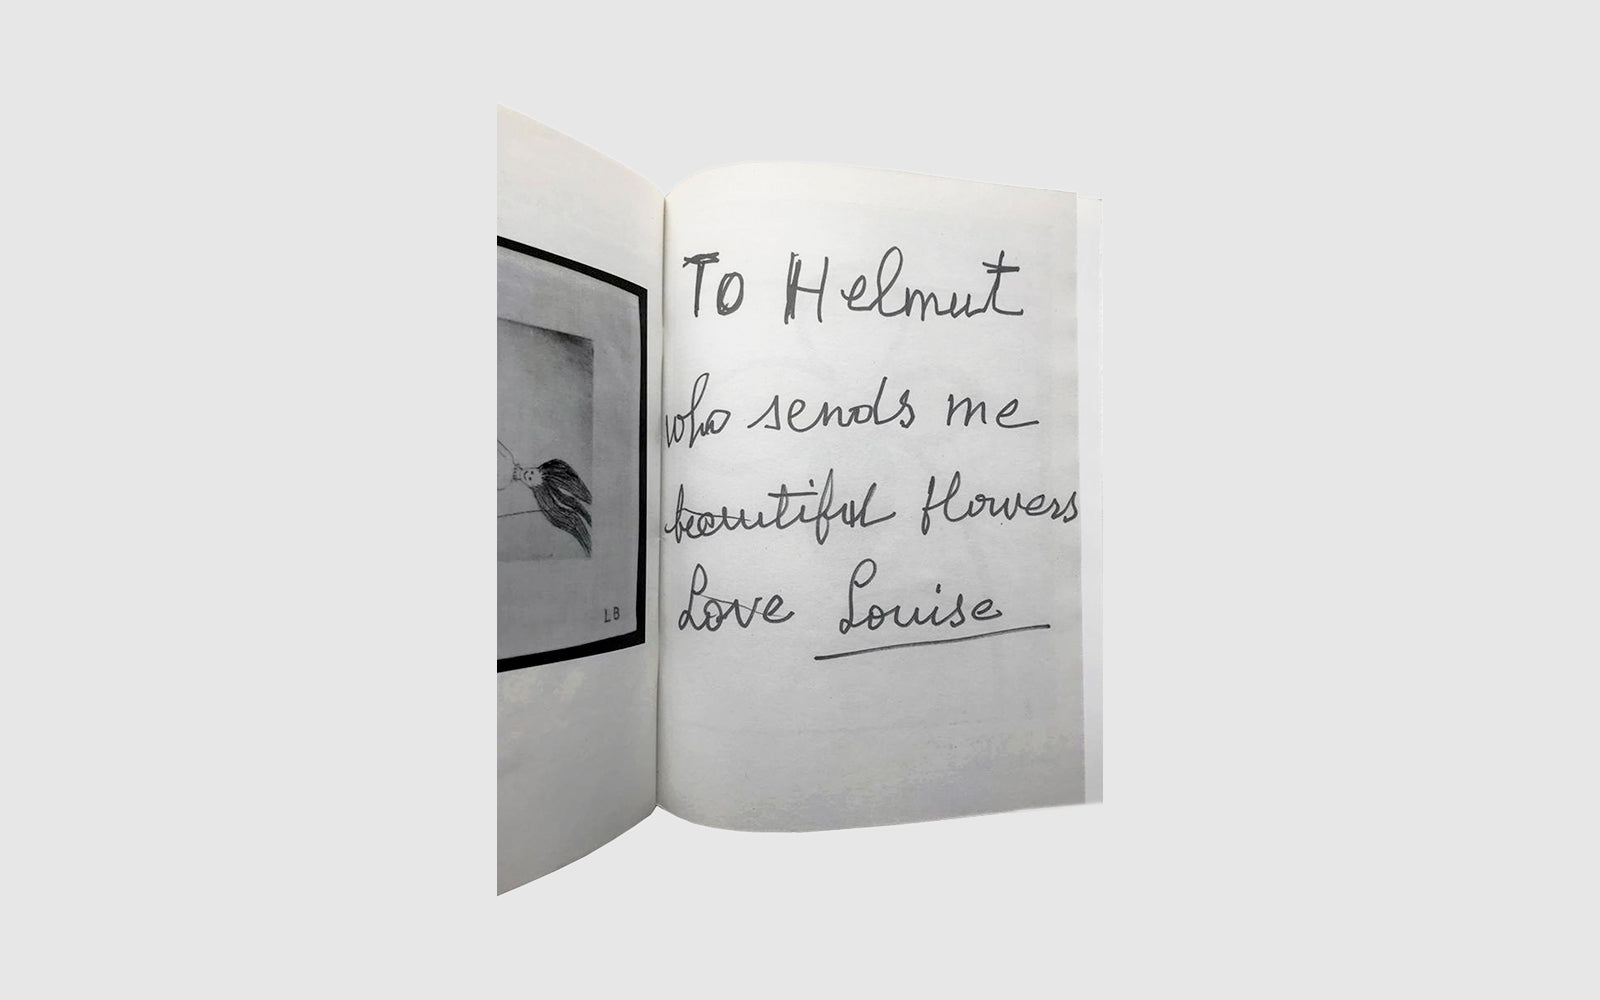 Helmut Lang Designer Memoir – Sumunage